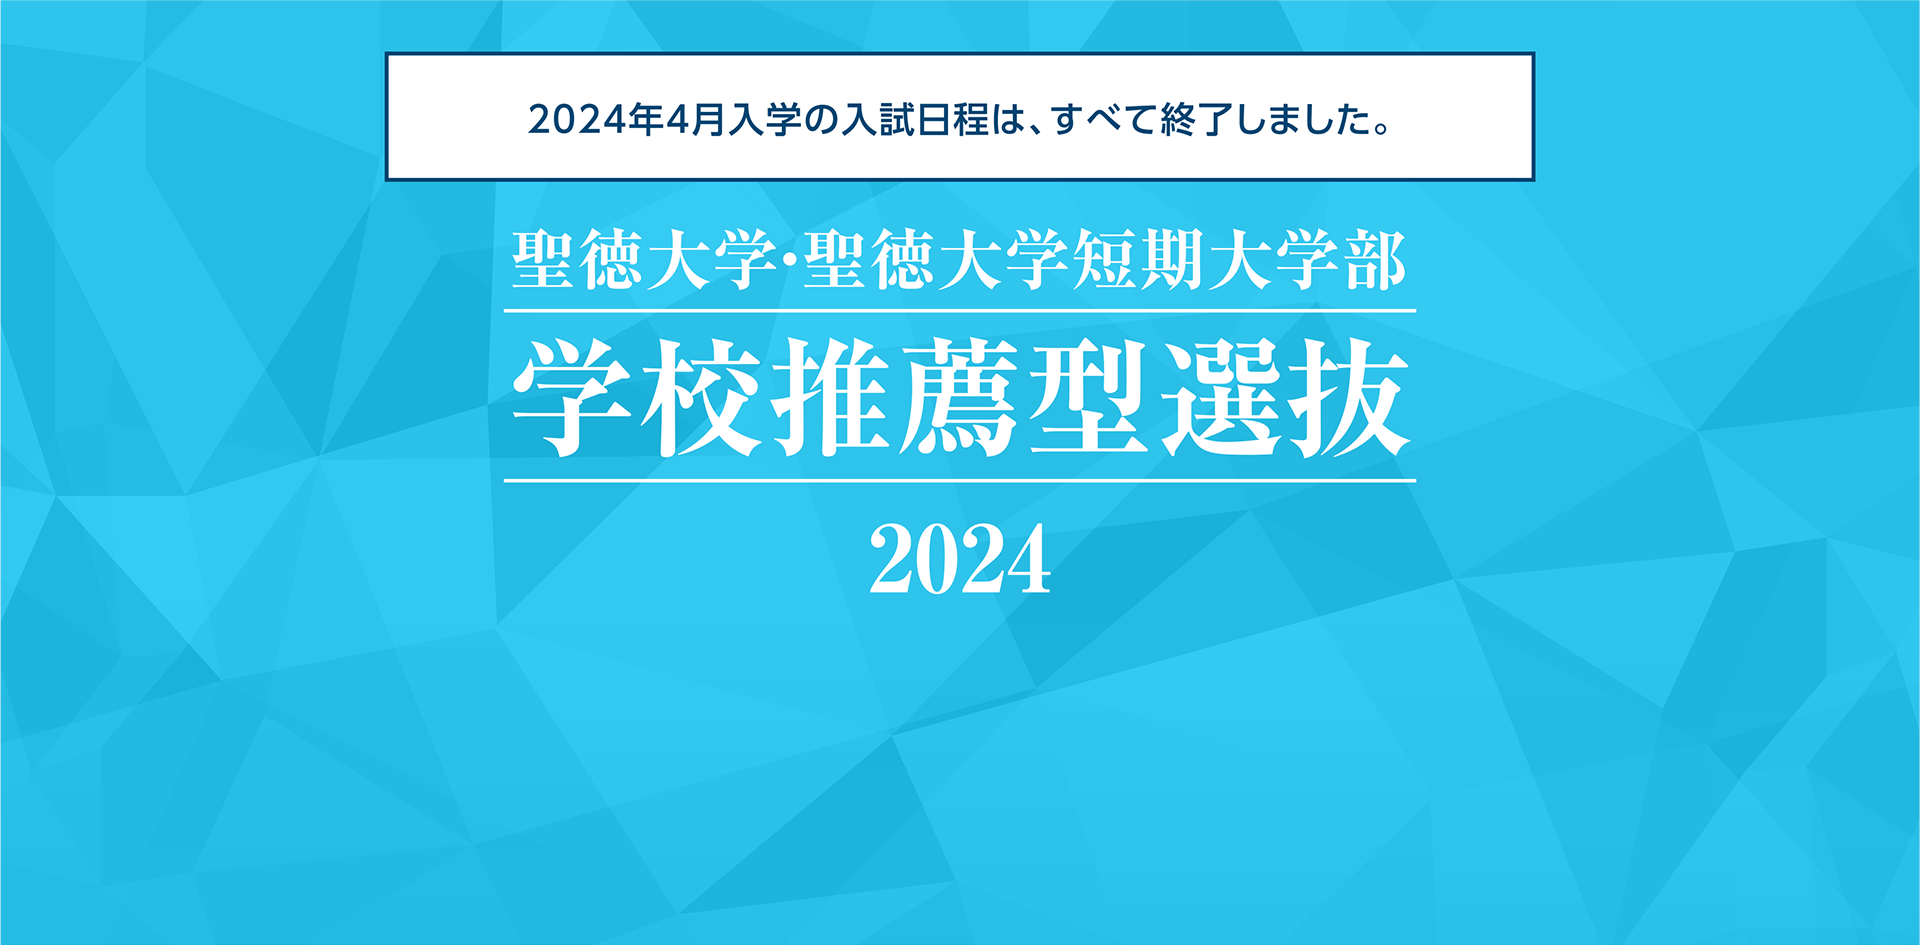 聖徳大学・聖徳大学短期大学部 学校推薦型選抜 2024